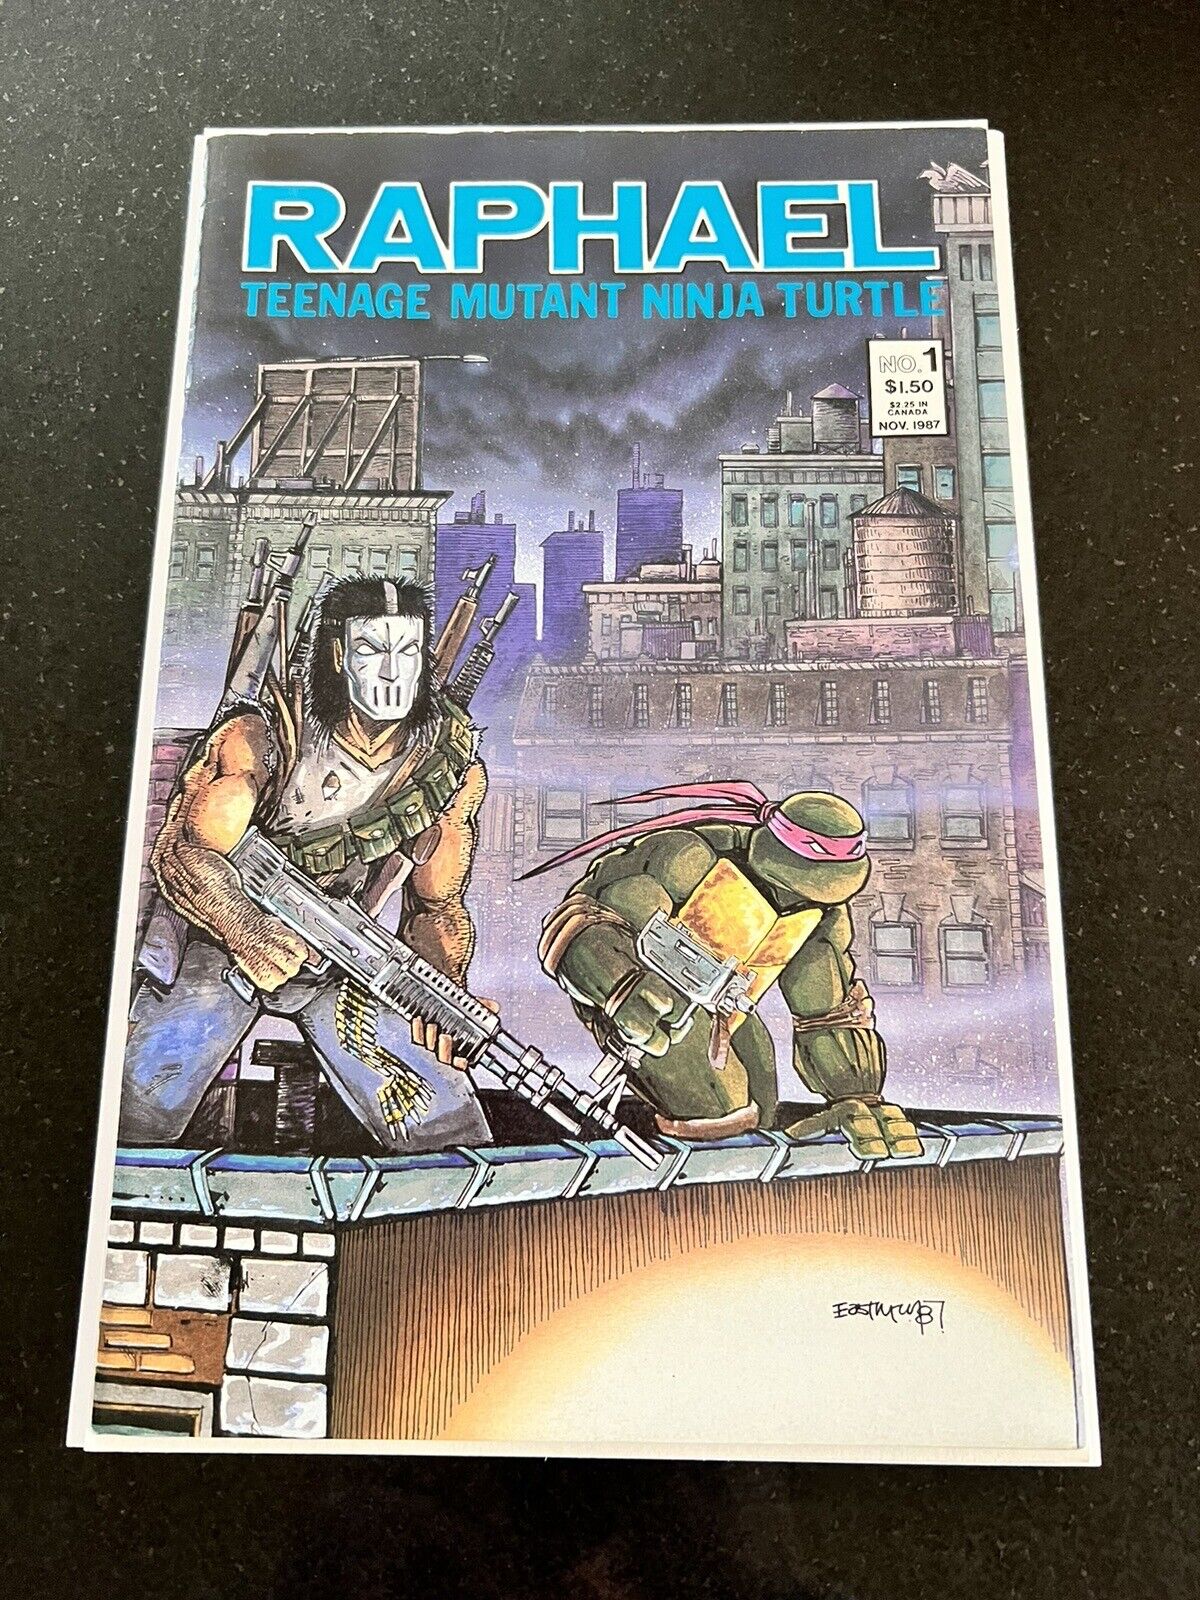 Teenage Mutant Ninja Turtles Raphael #1 NM- Second Print Mirage Casey Jones Key